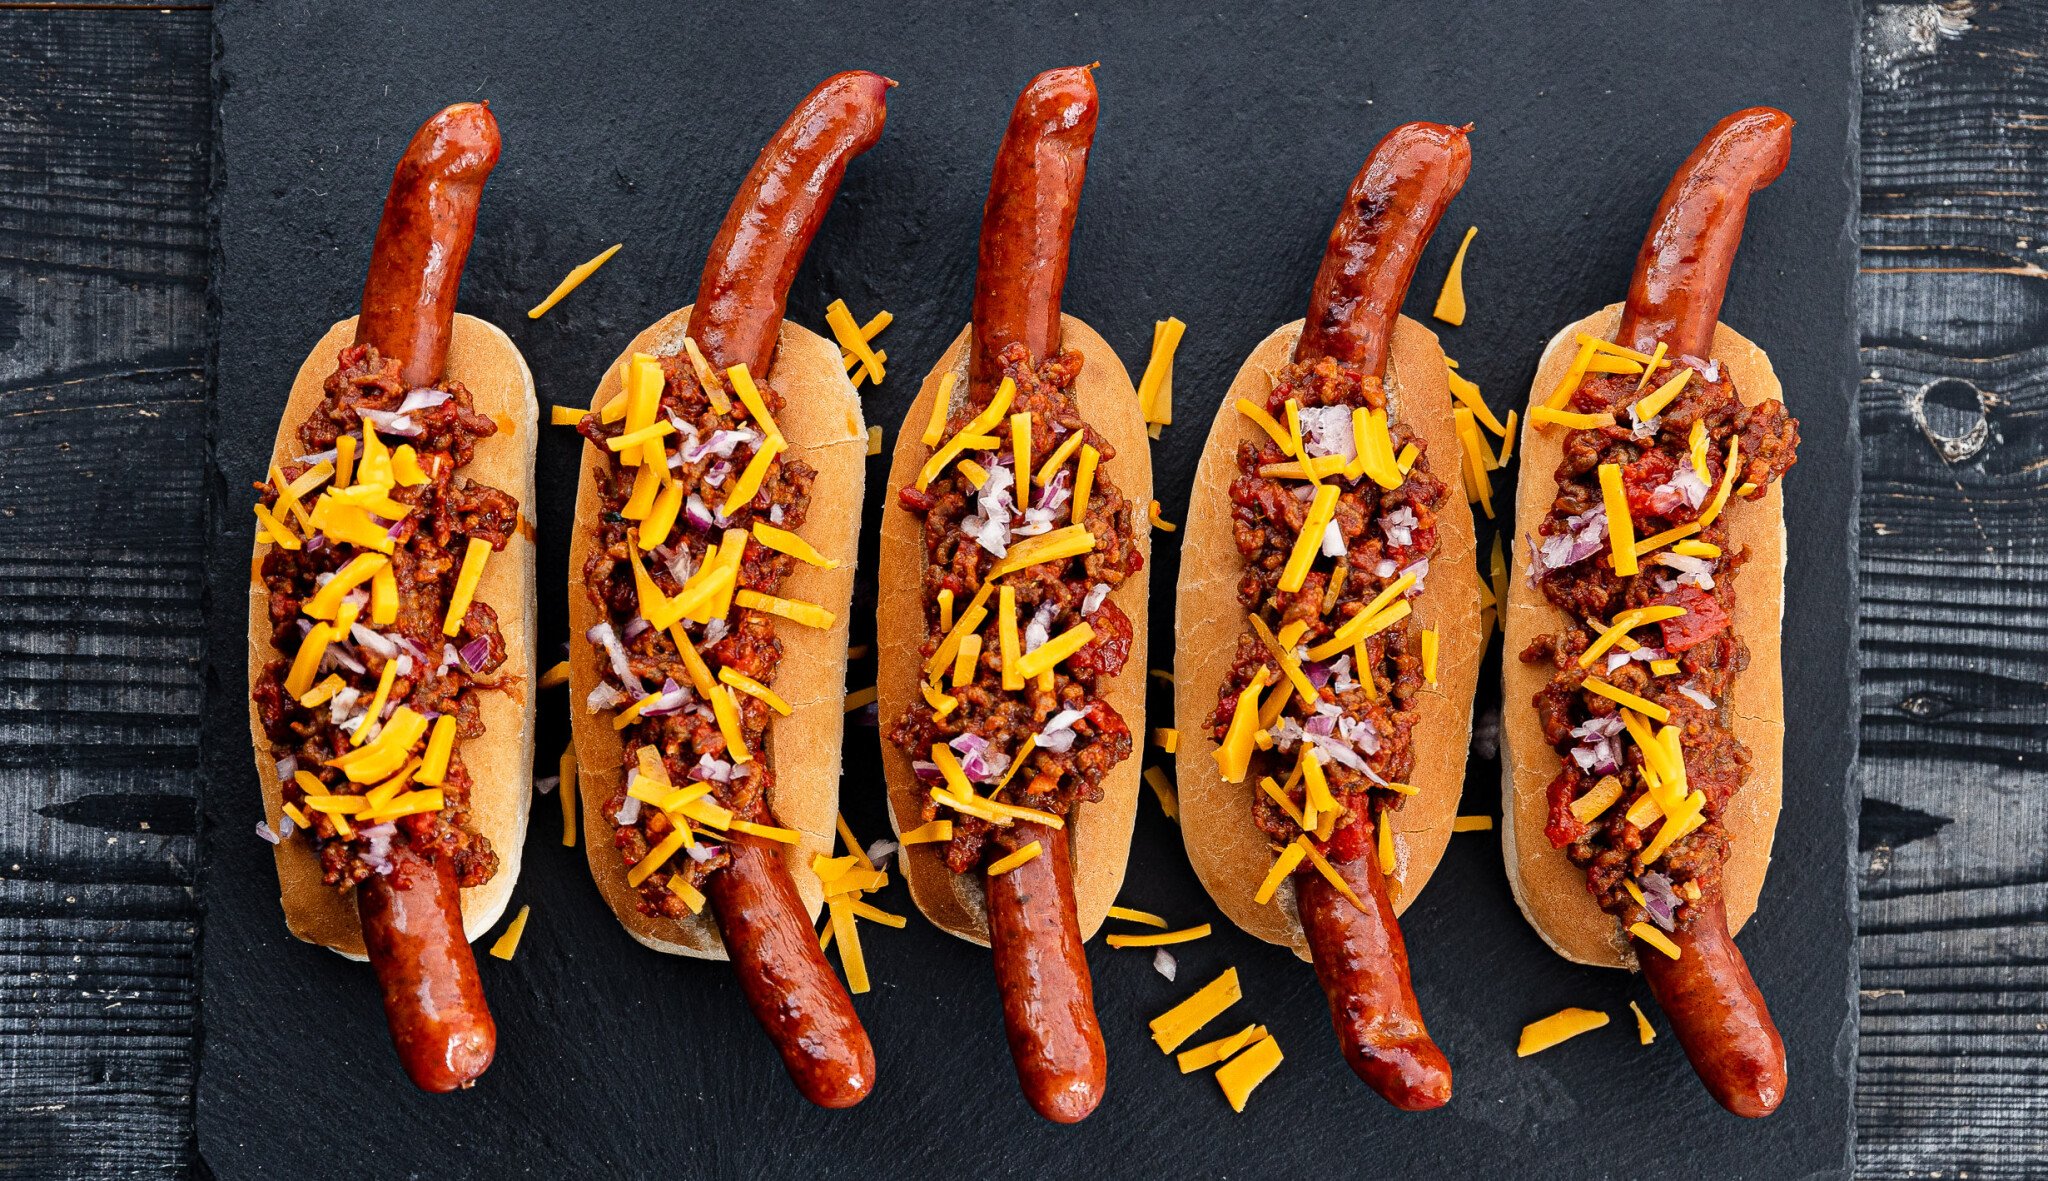 Chili dogs střídají klasické hot dogy. Zkuste vyostřené párky v rohlíku s texaským chili con carne